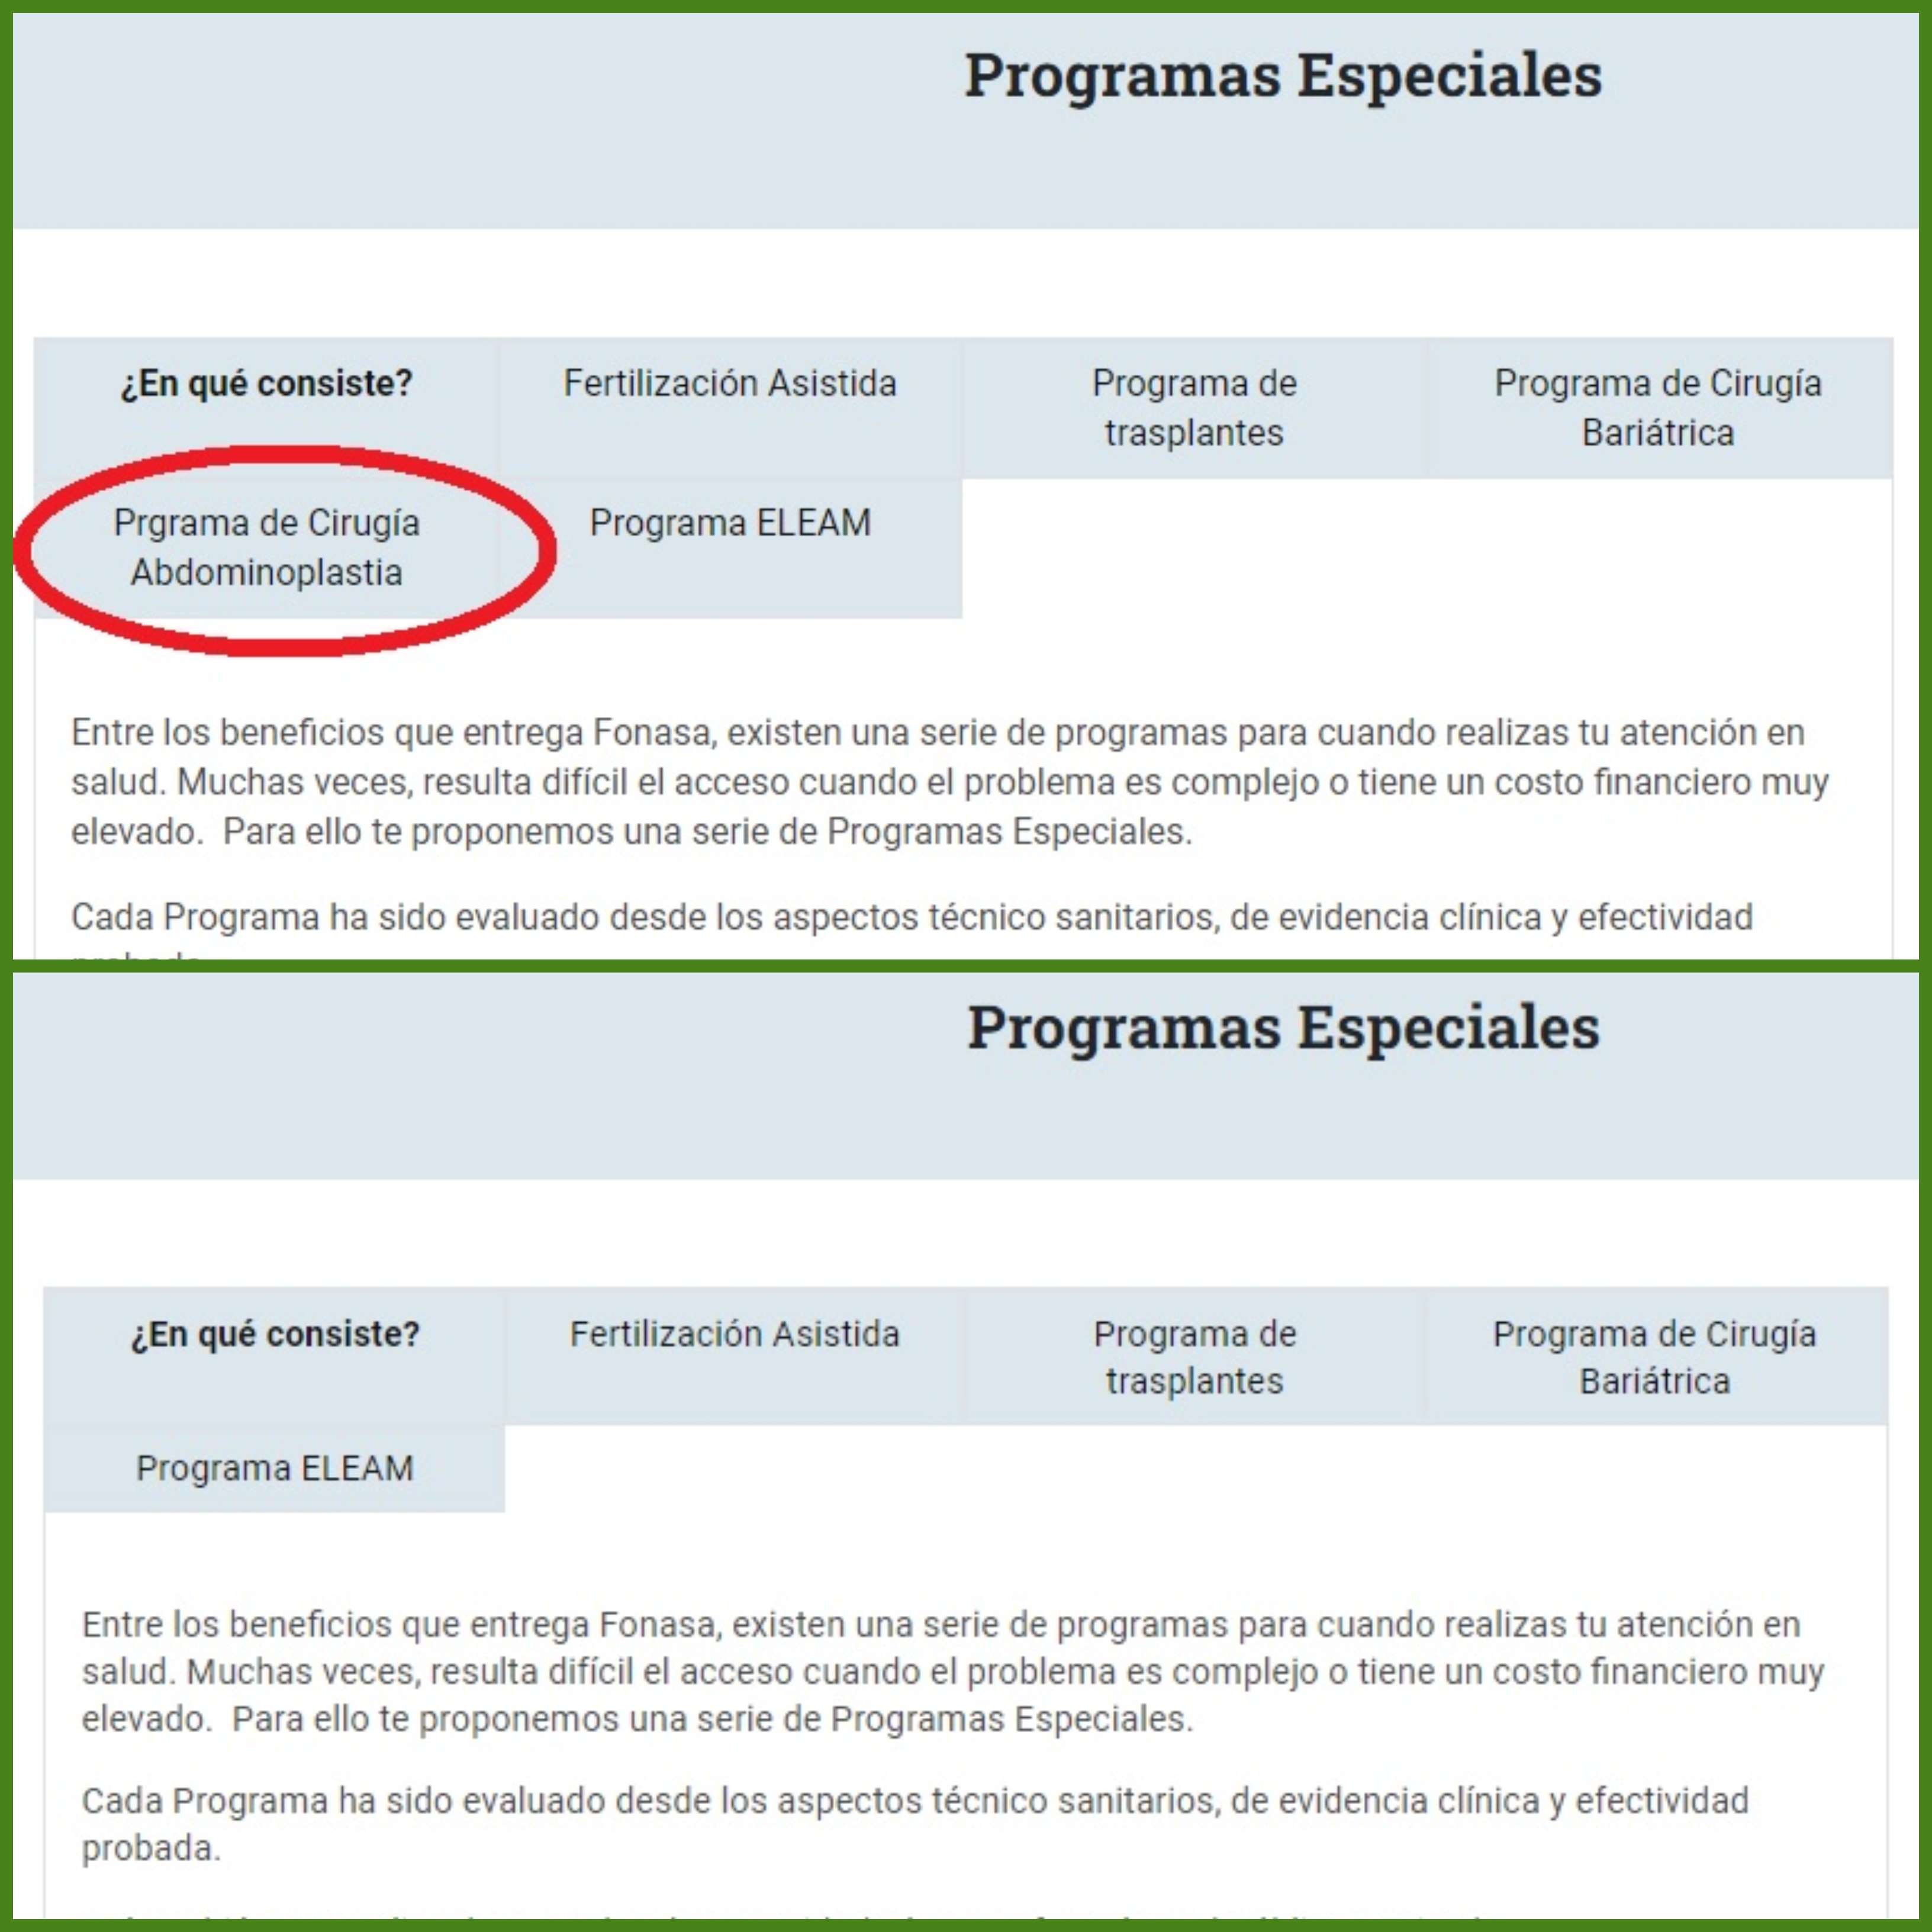 La imagen superior muestra la disponibilidad del Programa de Cirugía Abdominoplastia, mientras que en la inferior no aparece detallado. (Imagen extraída el 5 de enero desde el sitio web de Fonasa)